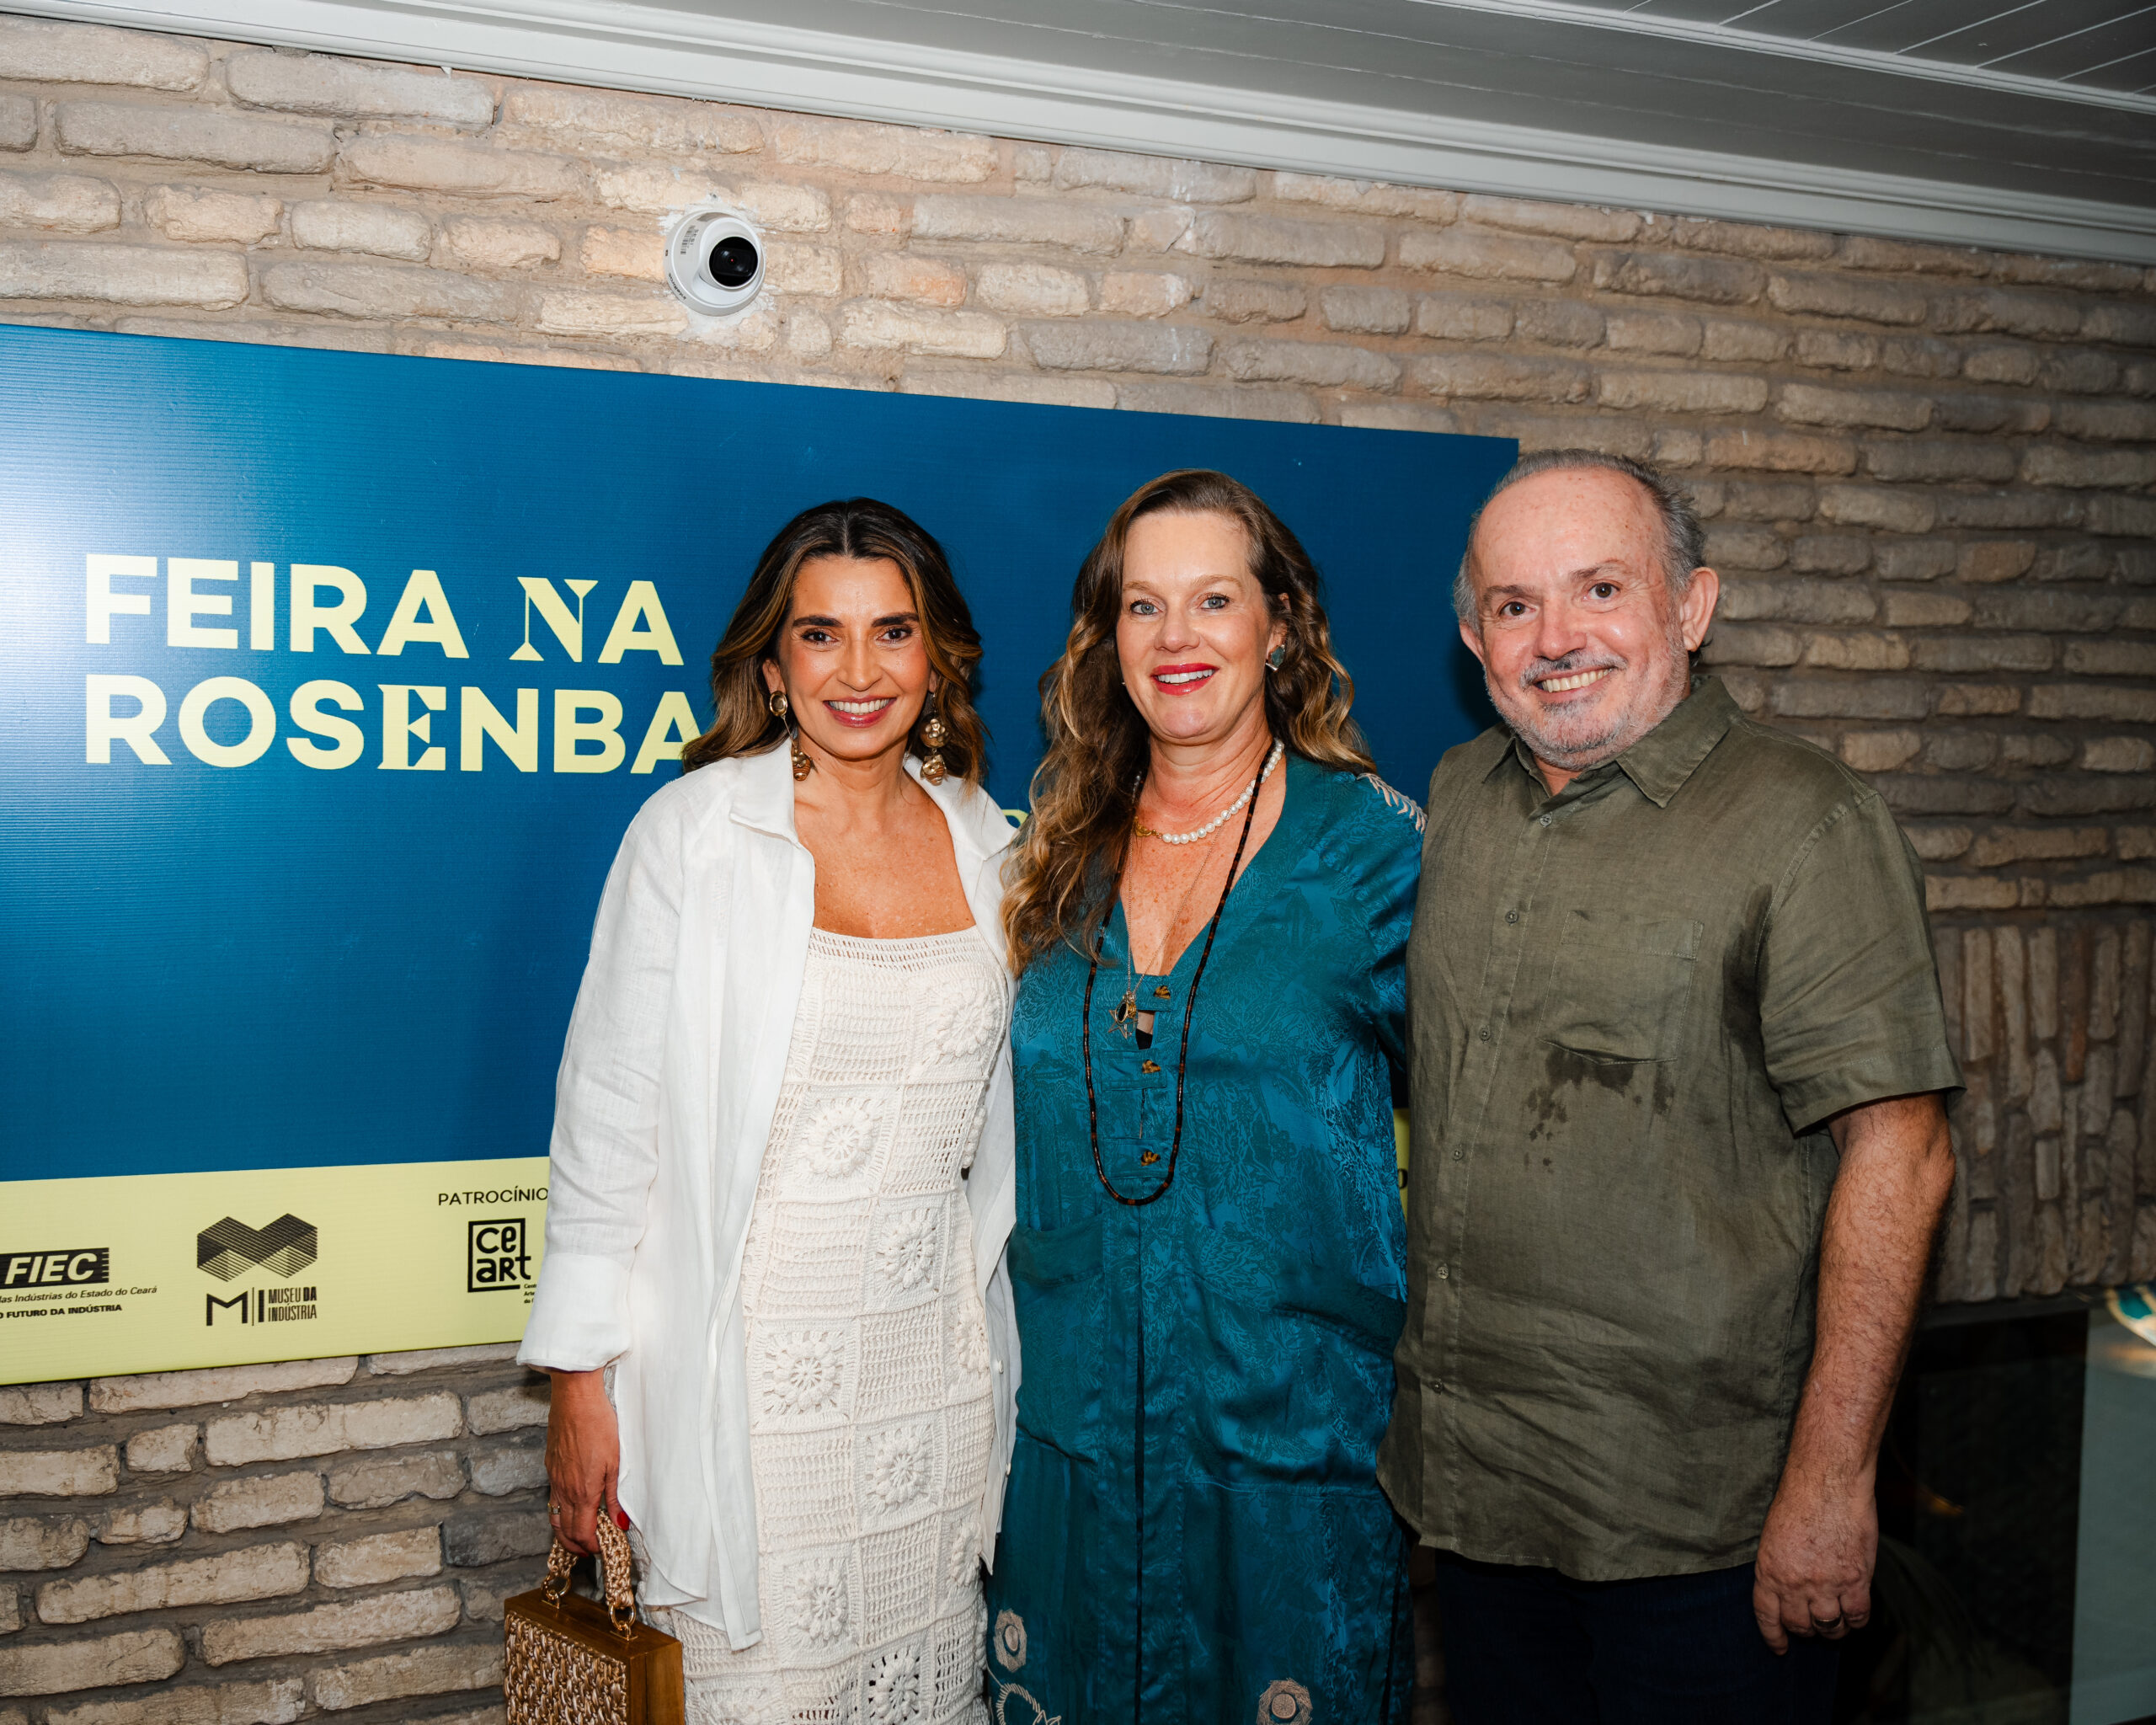 ‘Feira na Rosenbaum’ em Fortaleza: Márcia Travessoni é anfitriã do brunch de abertura